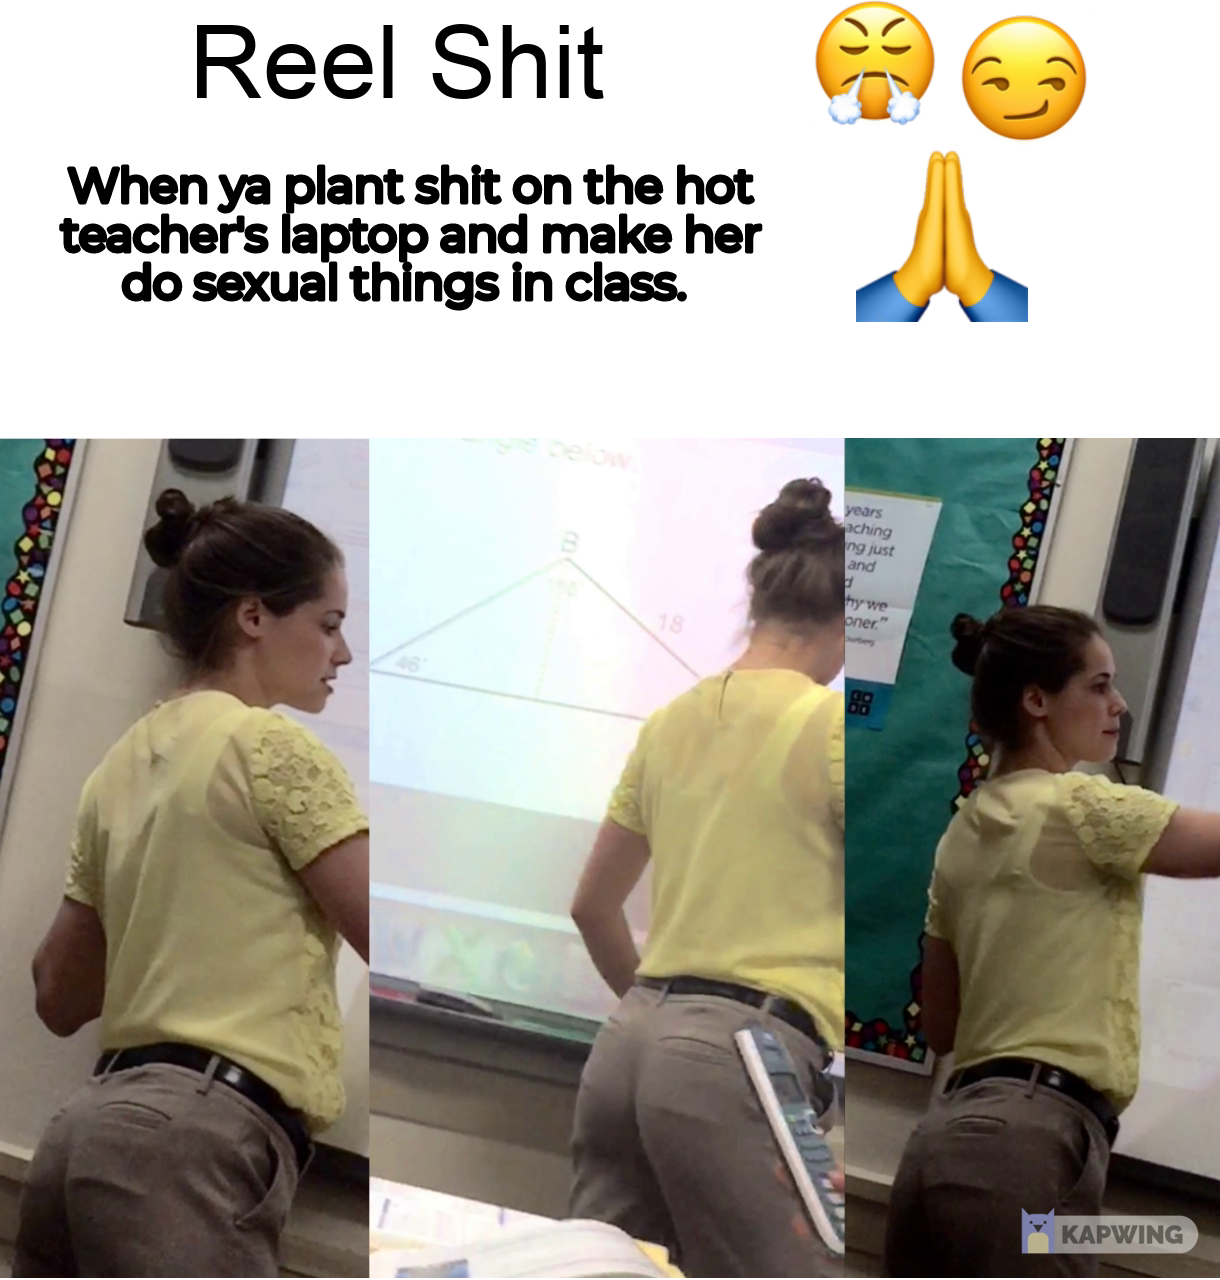 Teacher Hot Ass